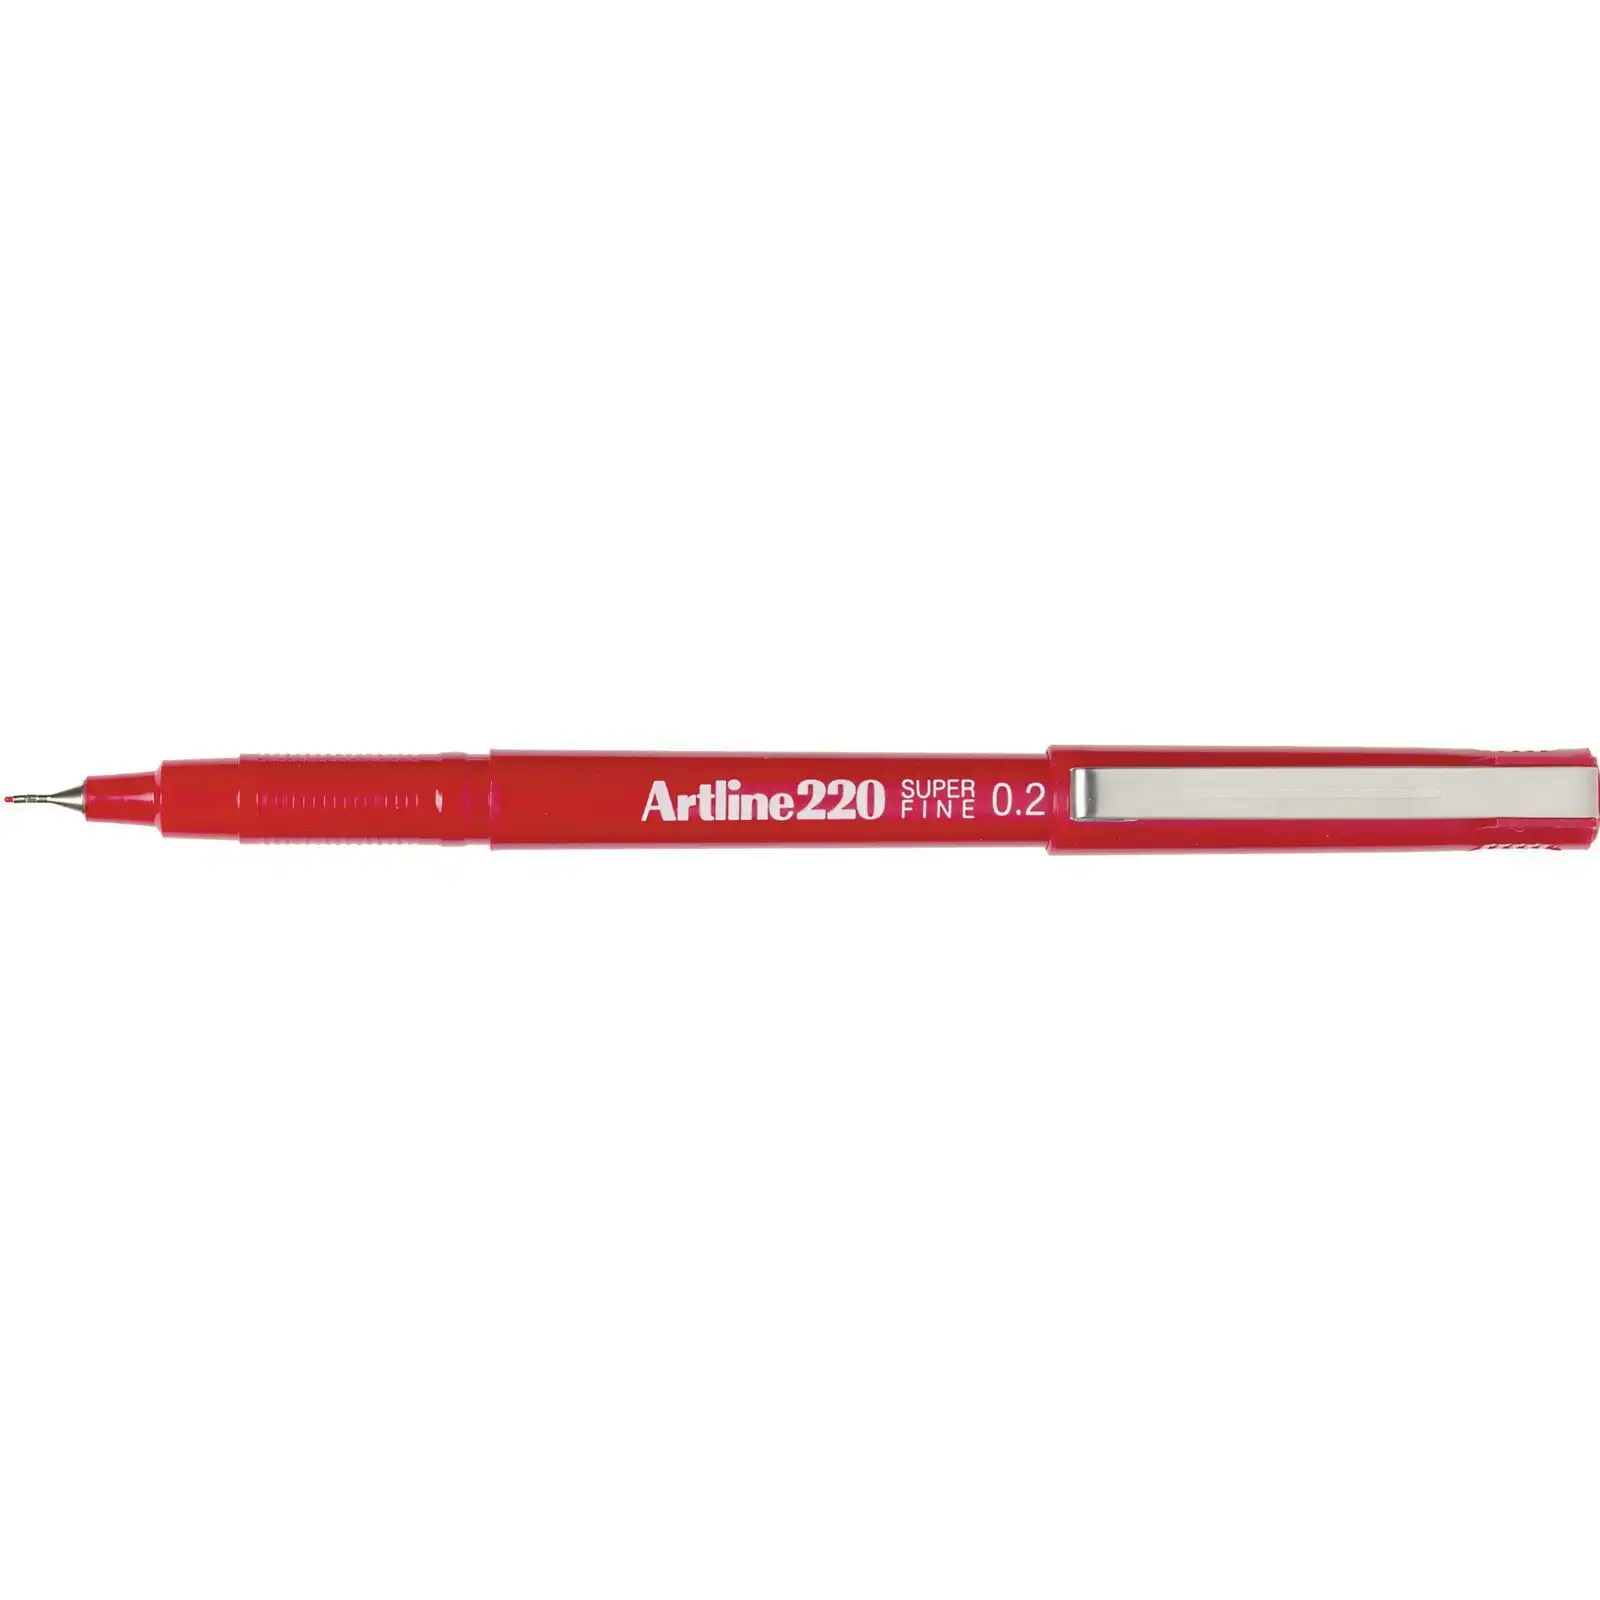 2pc Artline Fineline 220 Super Fine 0.2mm Line School Drawing Writing Pen Red